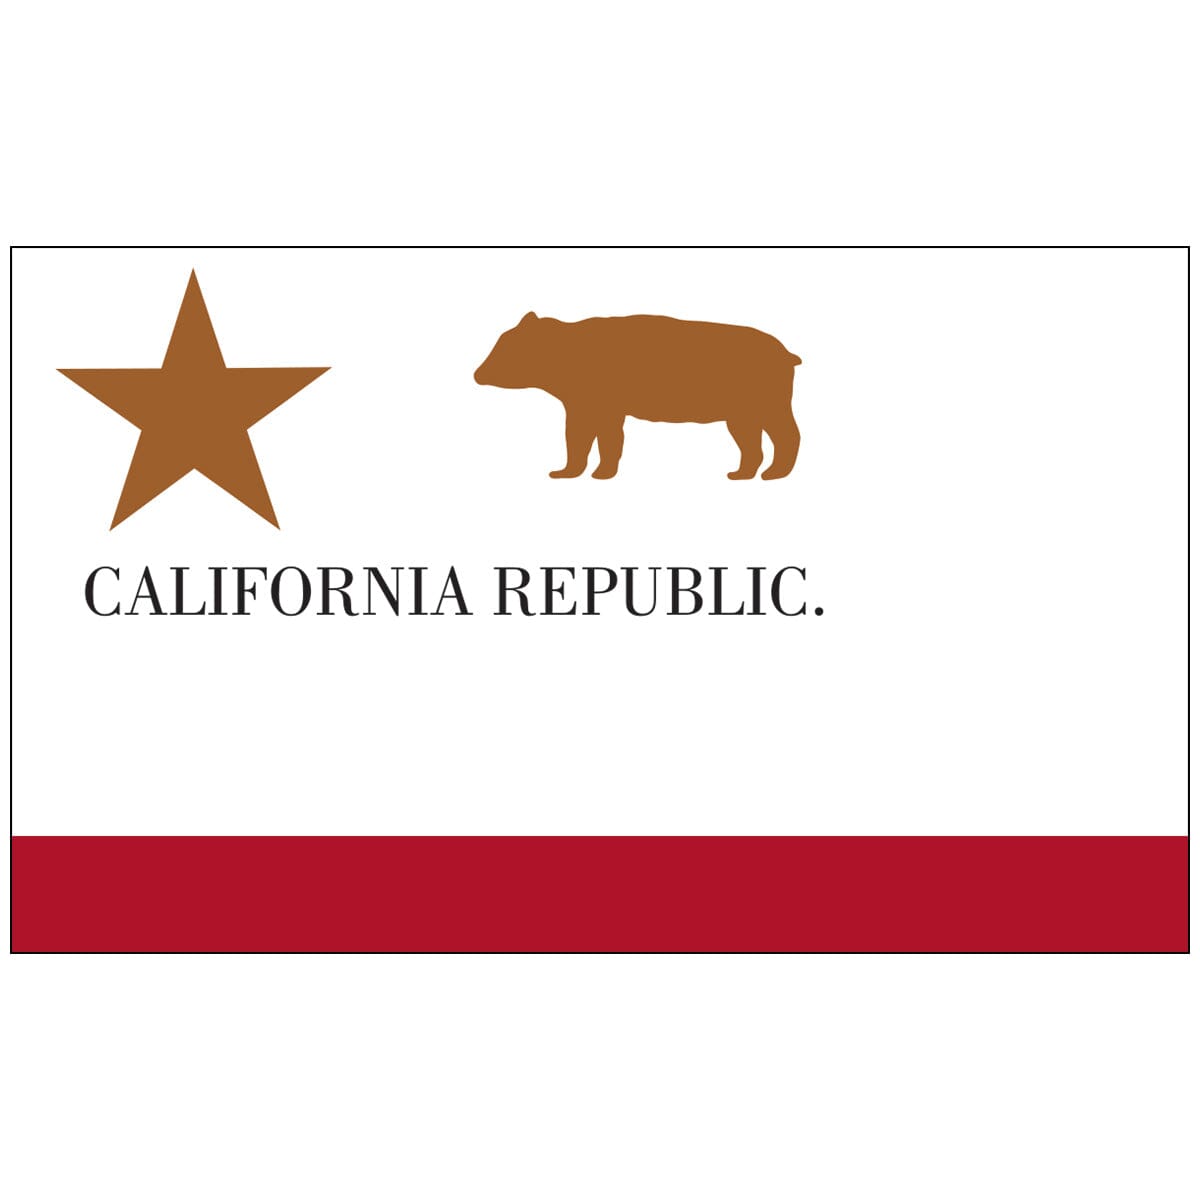 California Republic Flag | 3' x 5' Nylon